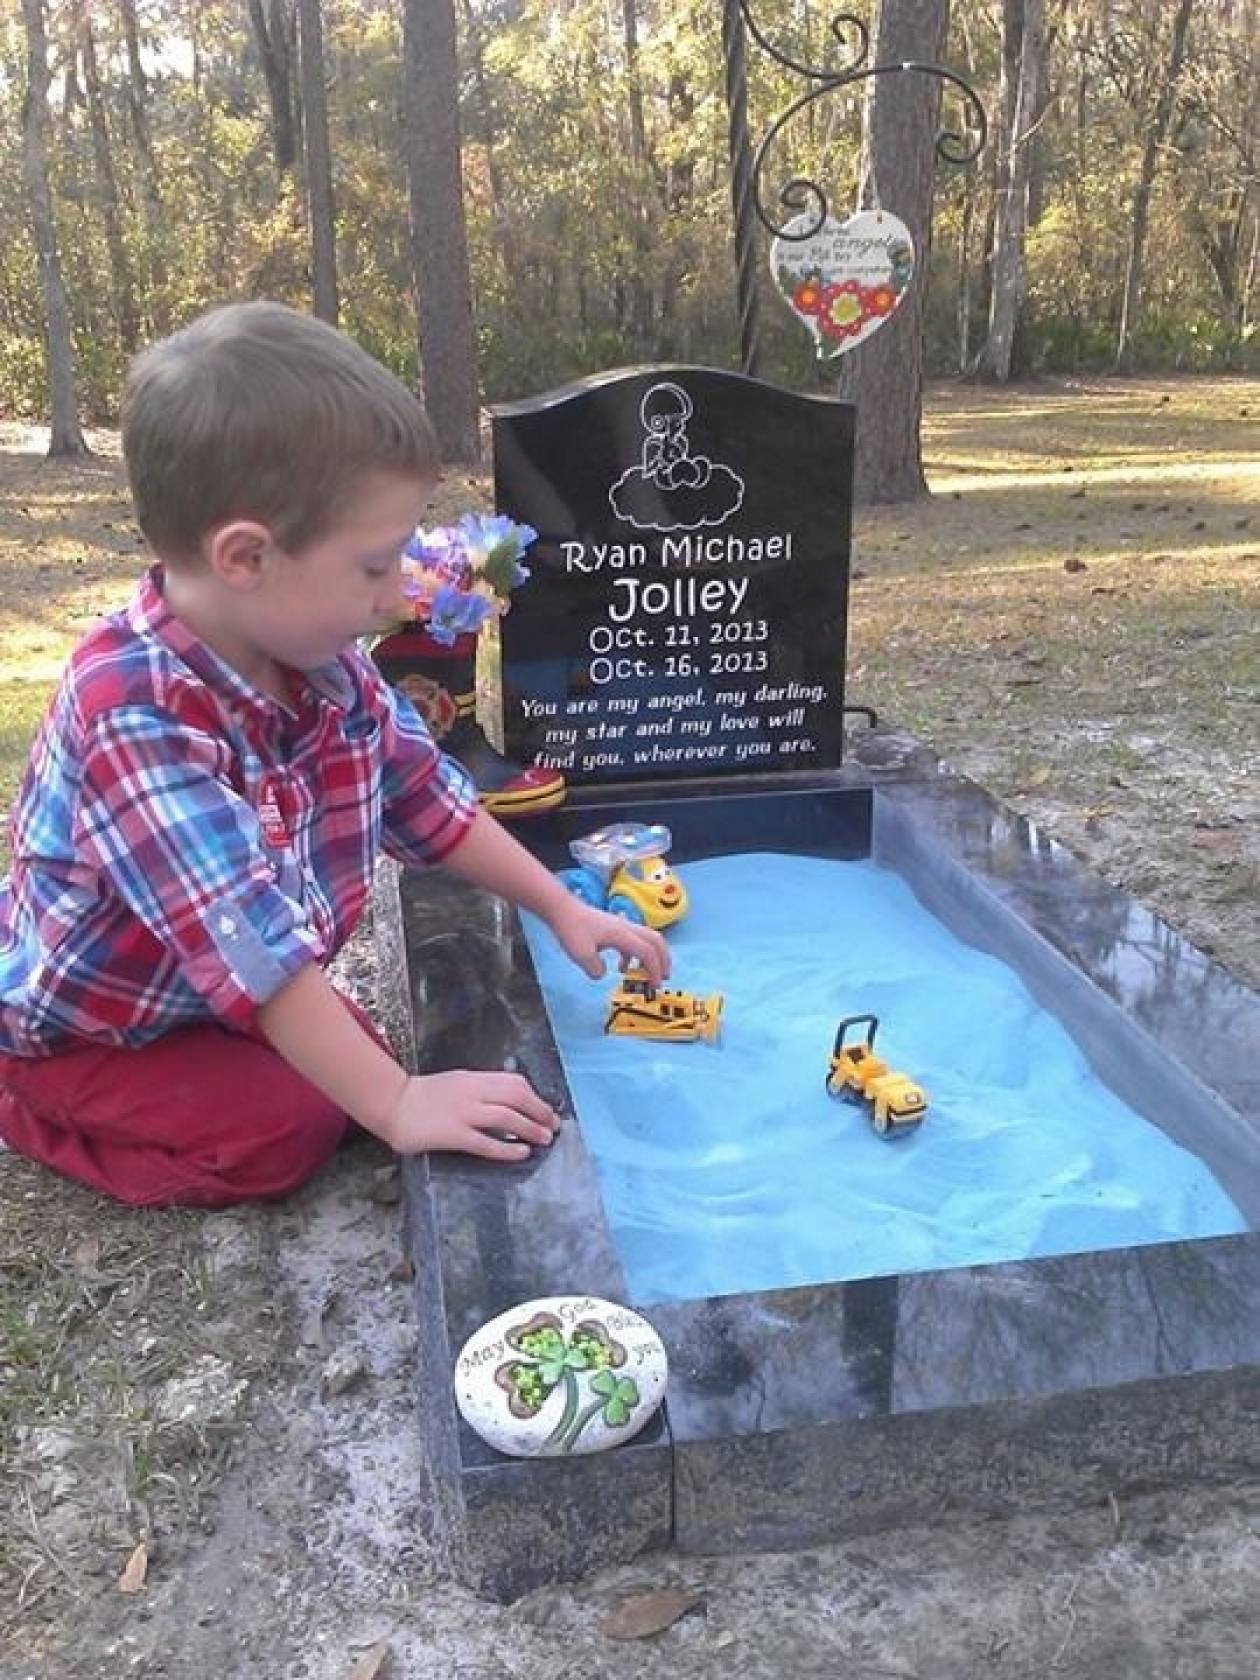 Έκανε τον τάφο παιδότοπο για να παίζει με τον αδερφό του... (βίντεο)